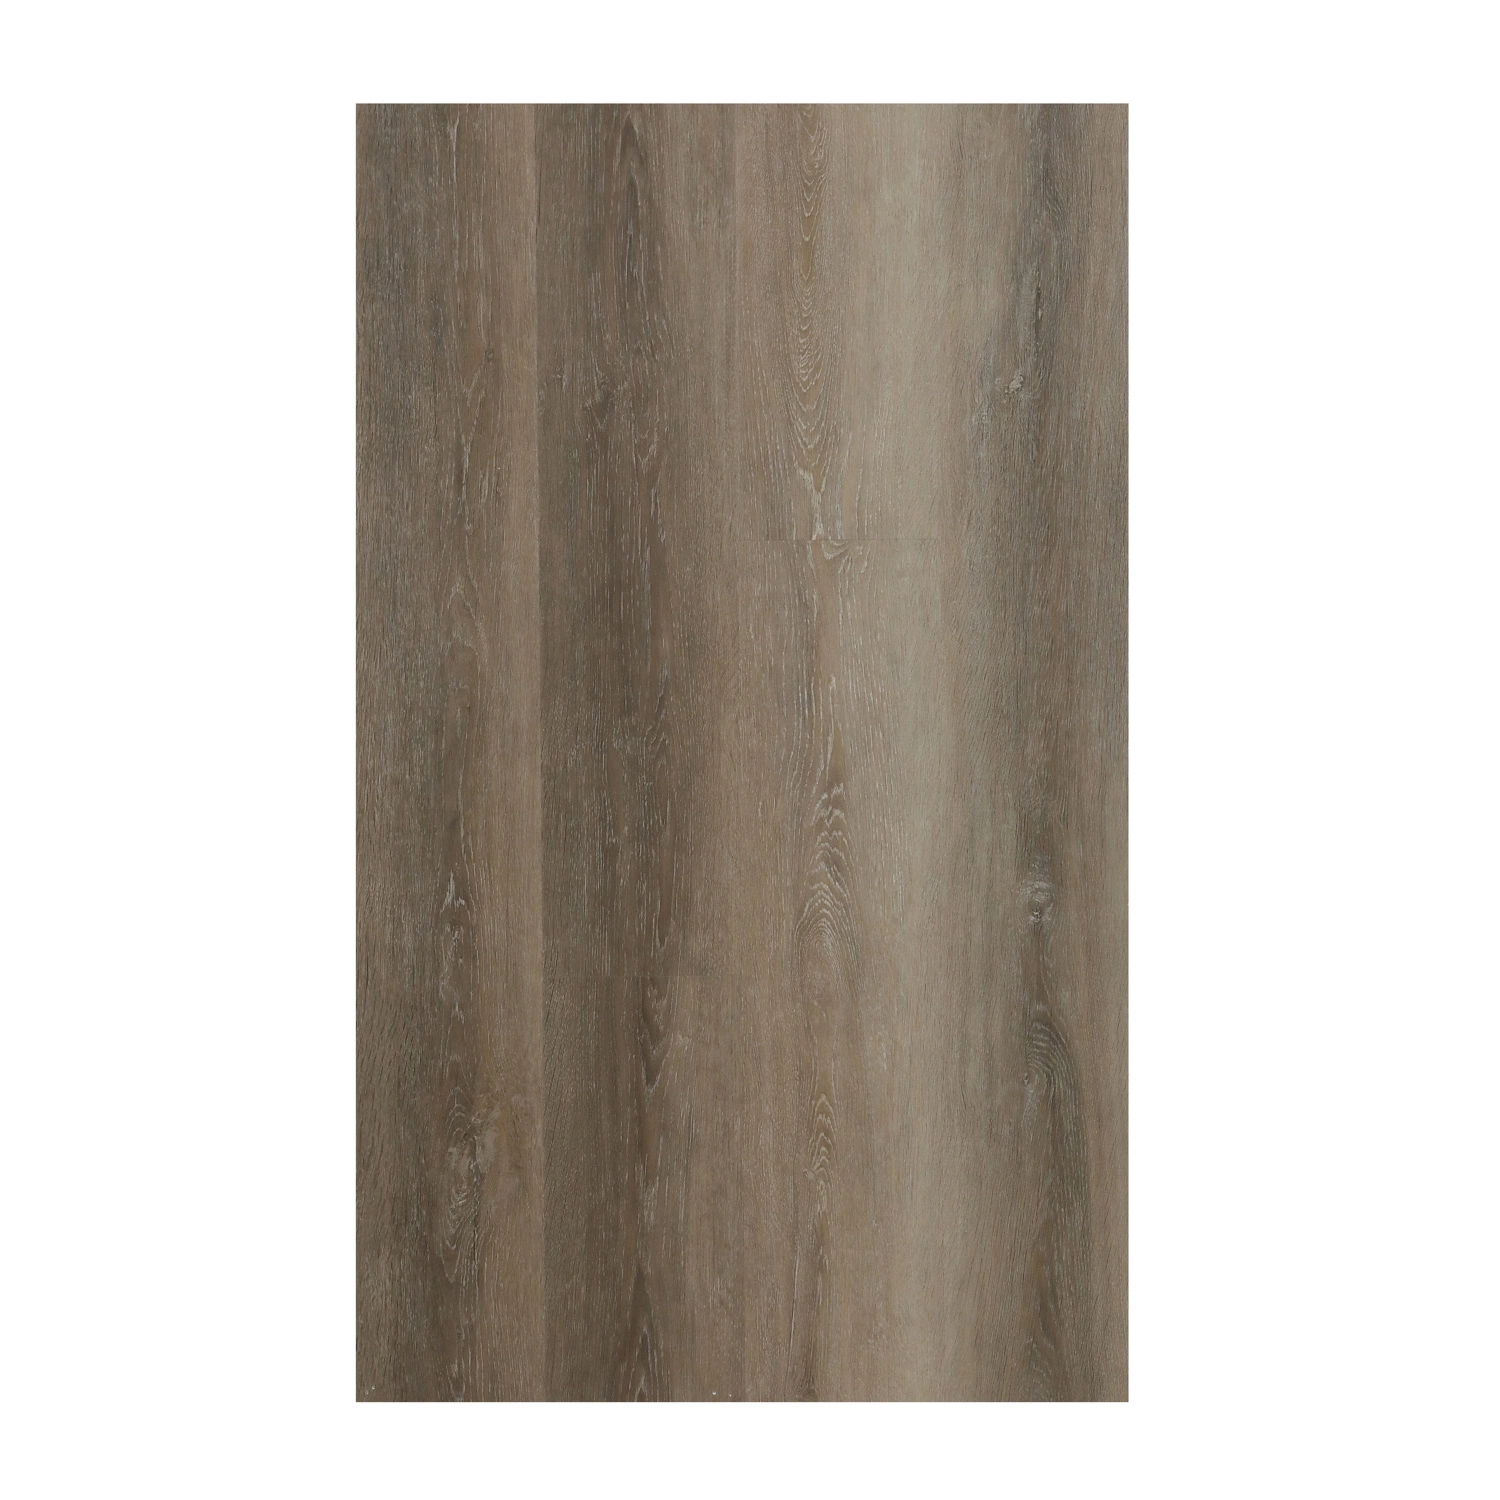 Les planchers étanches Unilin Cliquez sur la pierre de couleur en bois Caillebotis en plastique SPC IXPE EVA LVT RVP PVC vinyle rigide Plank Flooring